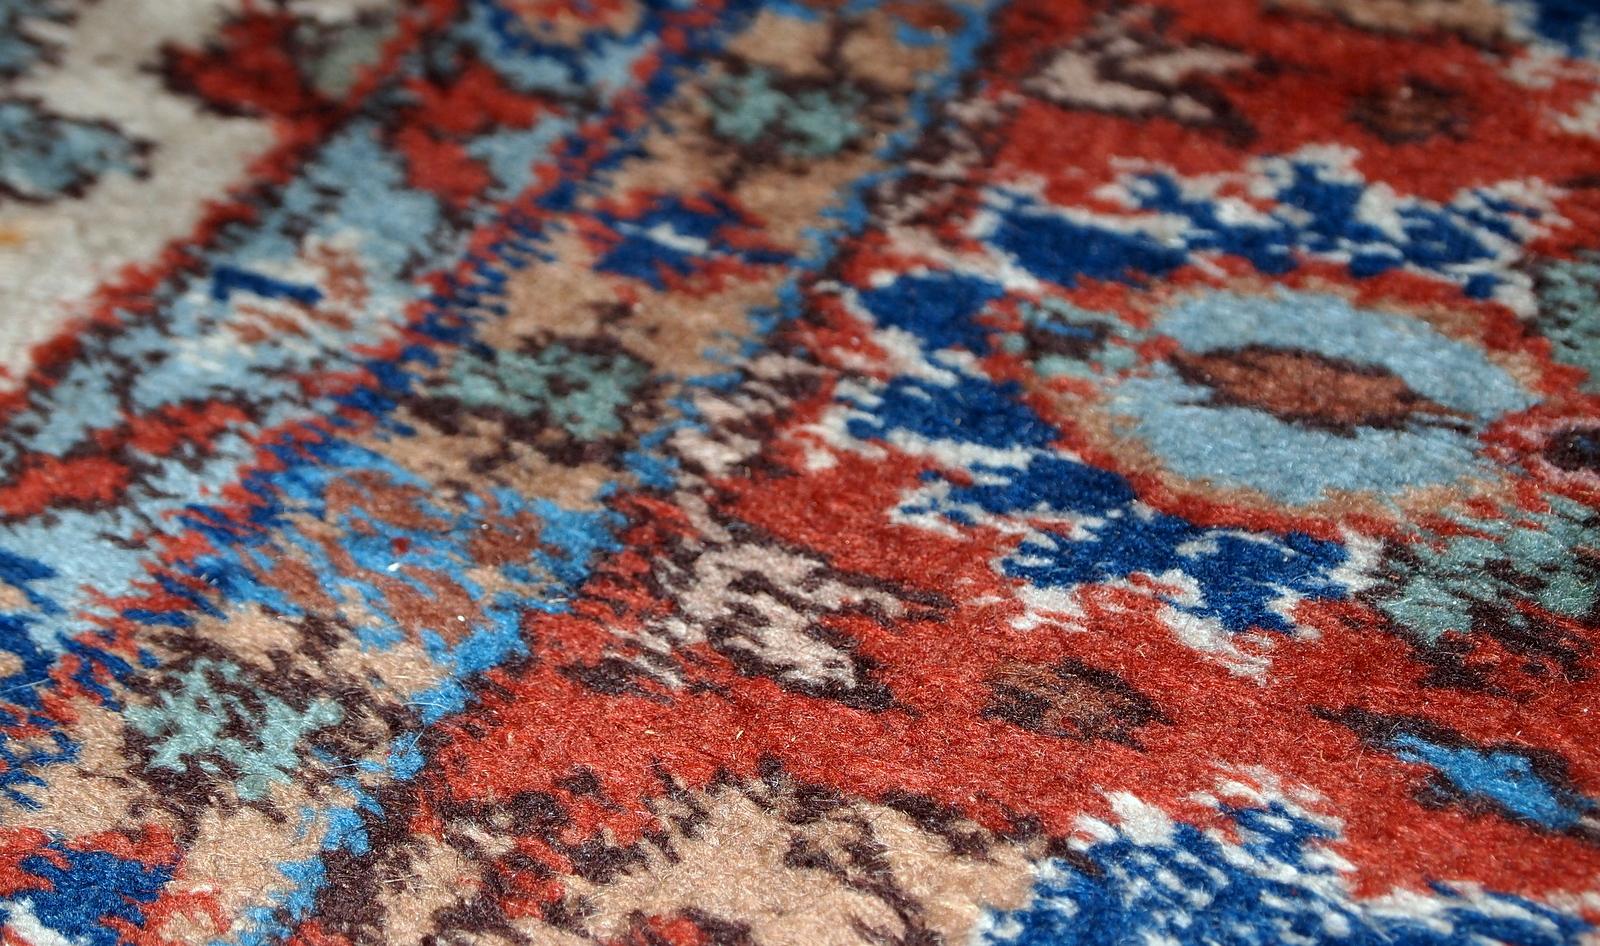 Handgefertigter alter persischer Mashad-Teppich in Beigetönen und gutem Originalzustand. Wunderschönes Allover-Design mit Gartenakzent in blauen und roten Farben.

-zustand: original gut,

-etwa: 1950er Jahre,

-größe: 6,9' x 10,9' (210cm x